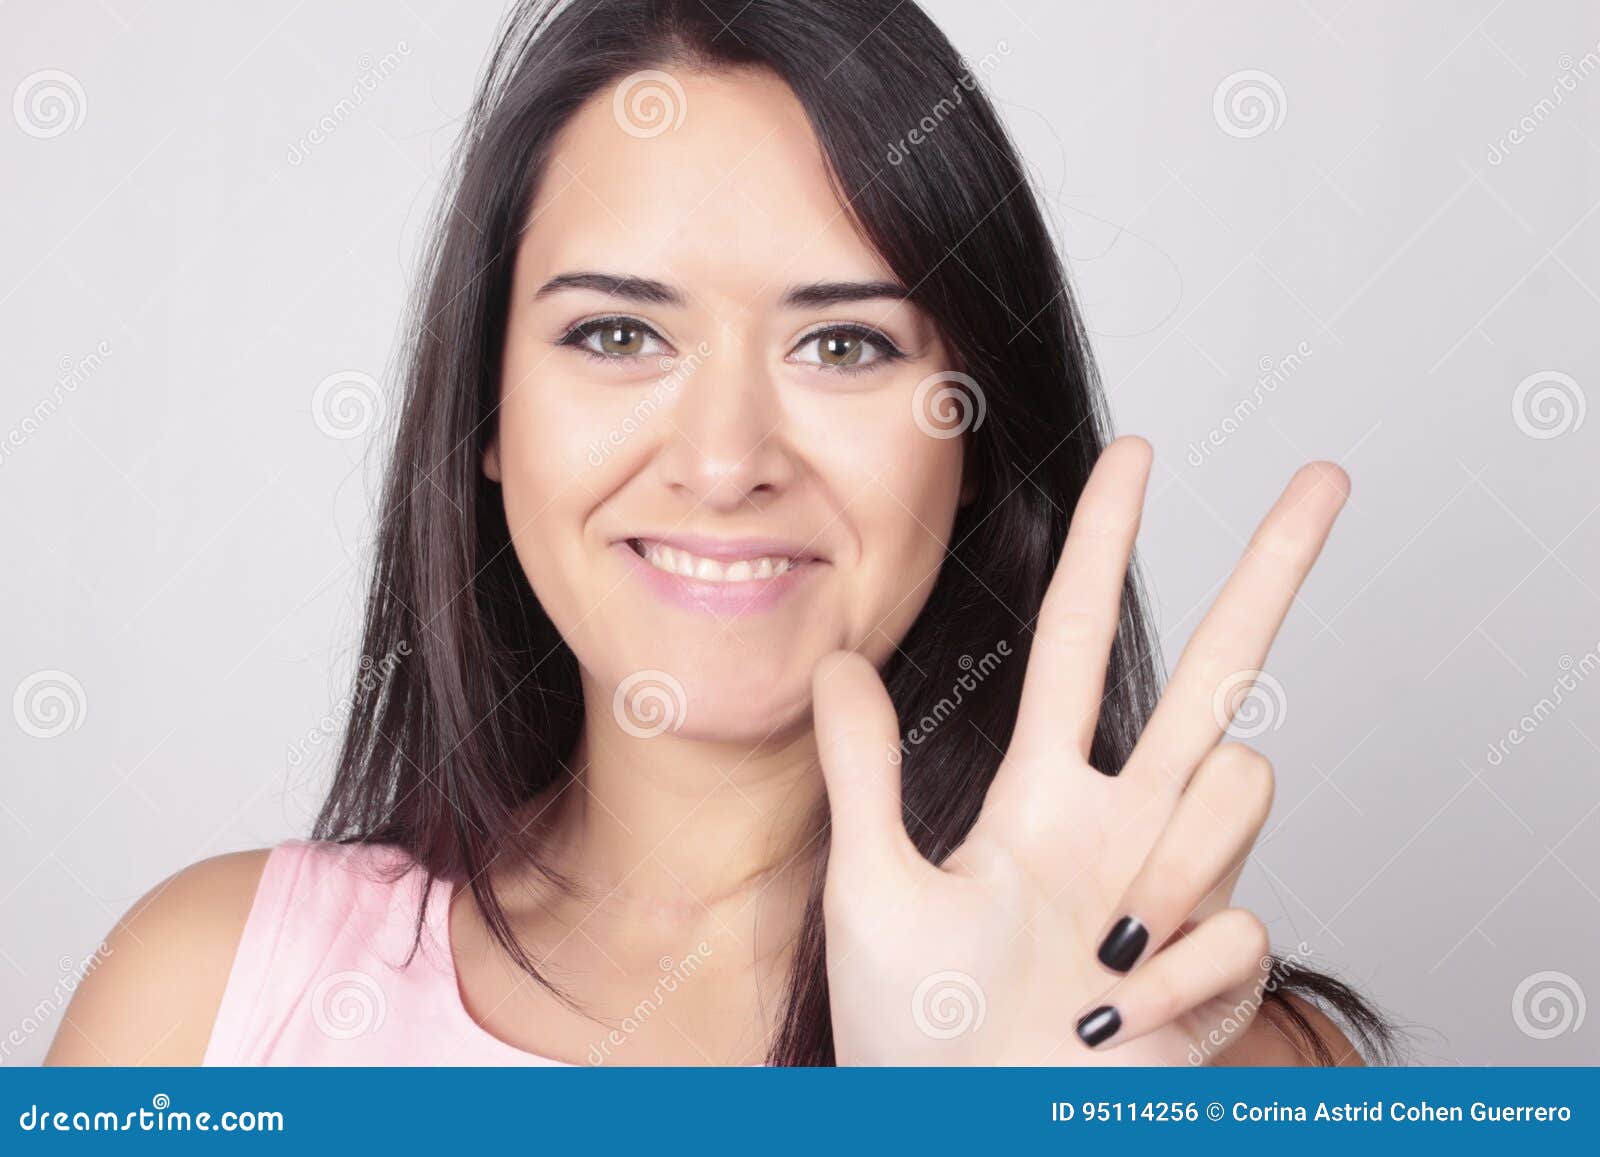 2 2 четыре пальца. Два пальца в девушке. Девушка жесты. Девушка с жестом два пальца. Девушка с четырьмя пальцами.